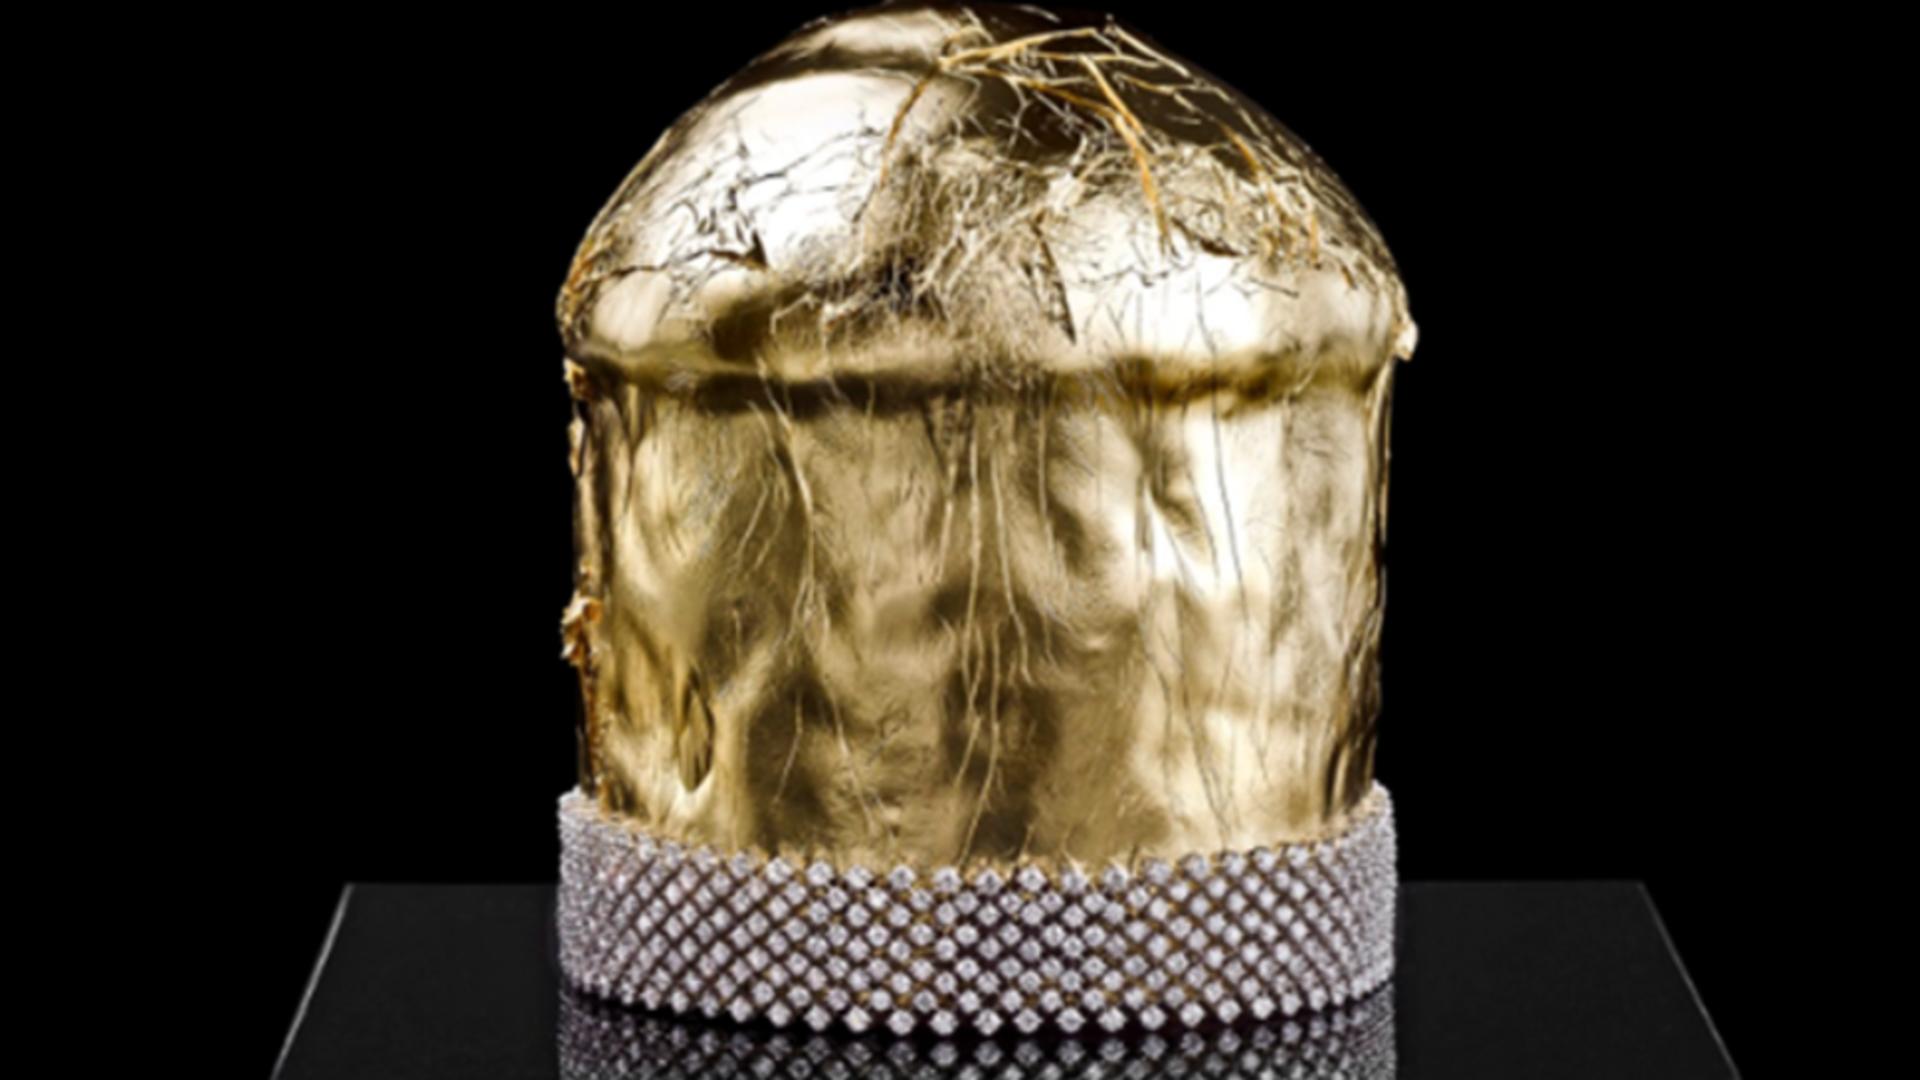 Cel mai scump panettone din lume costă 700.000 de euro, este acoperit în întregime în aur şi este ornat cu diamante